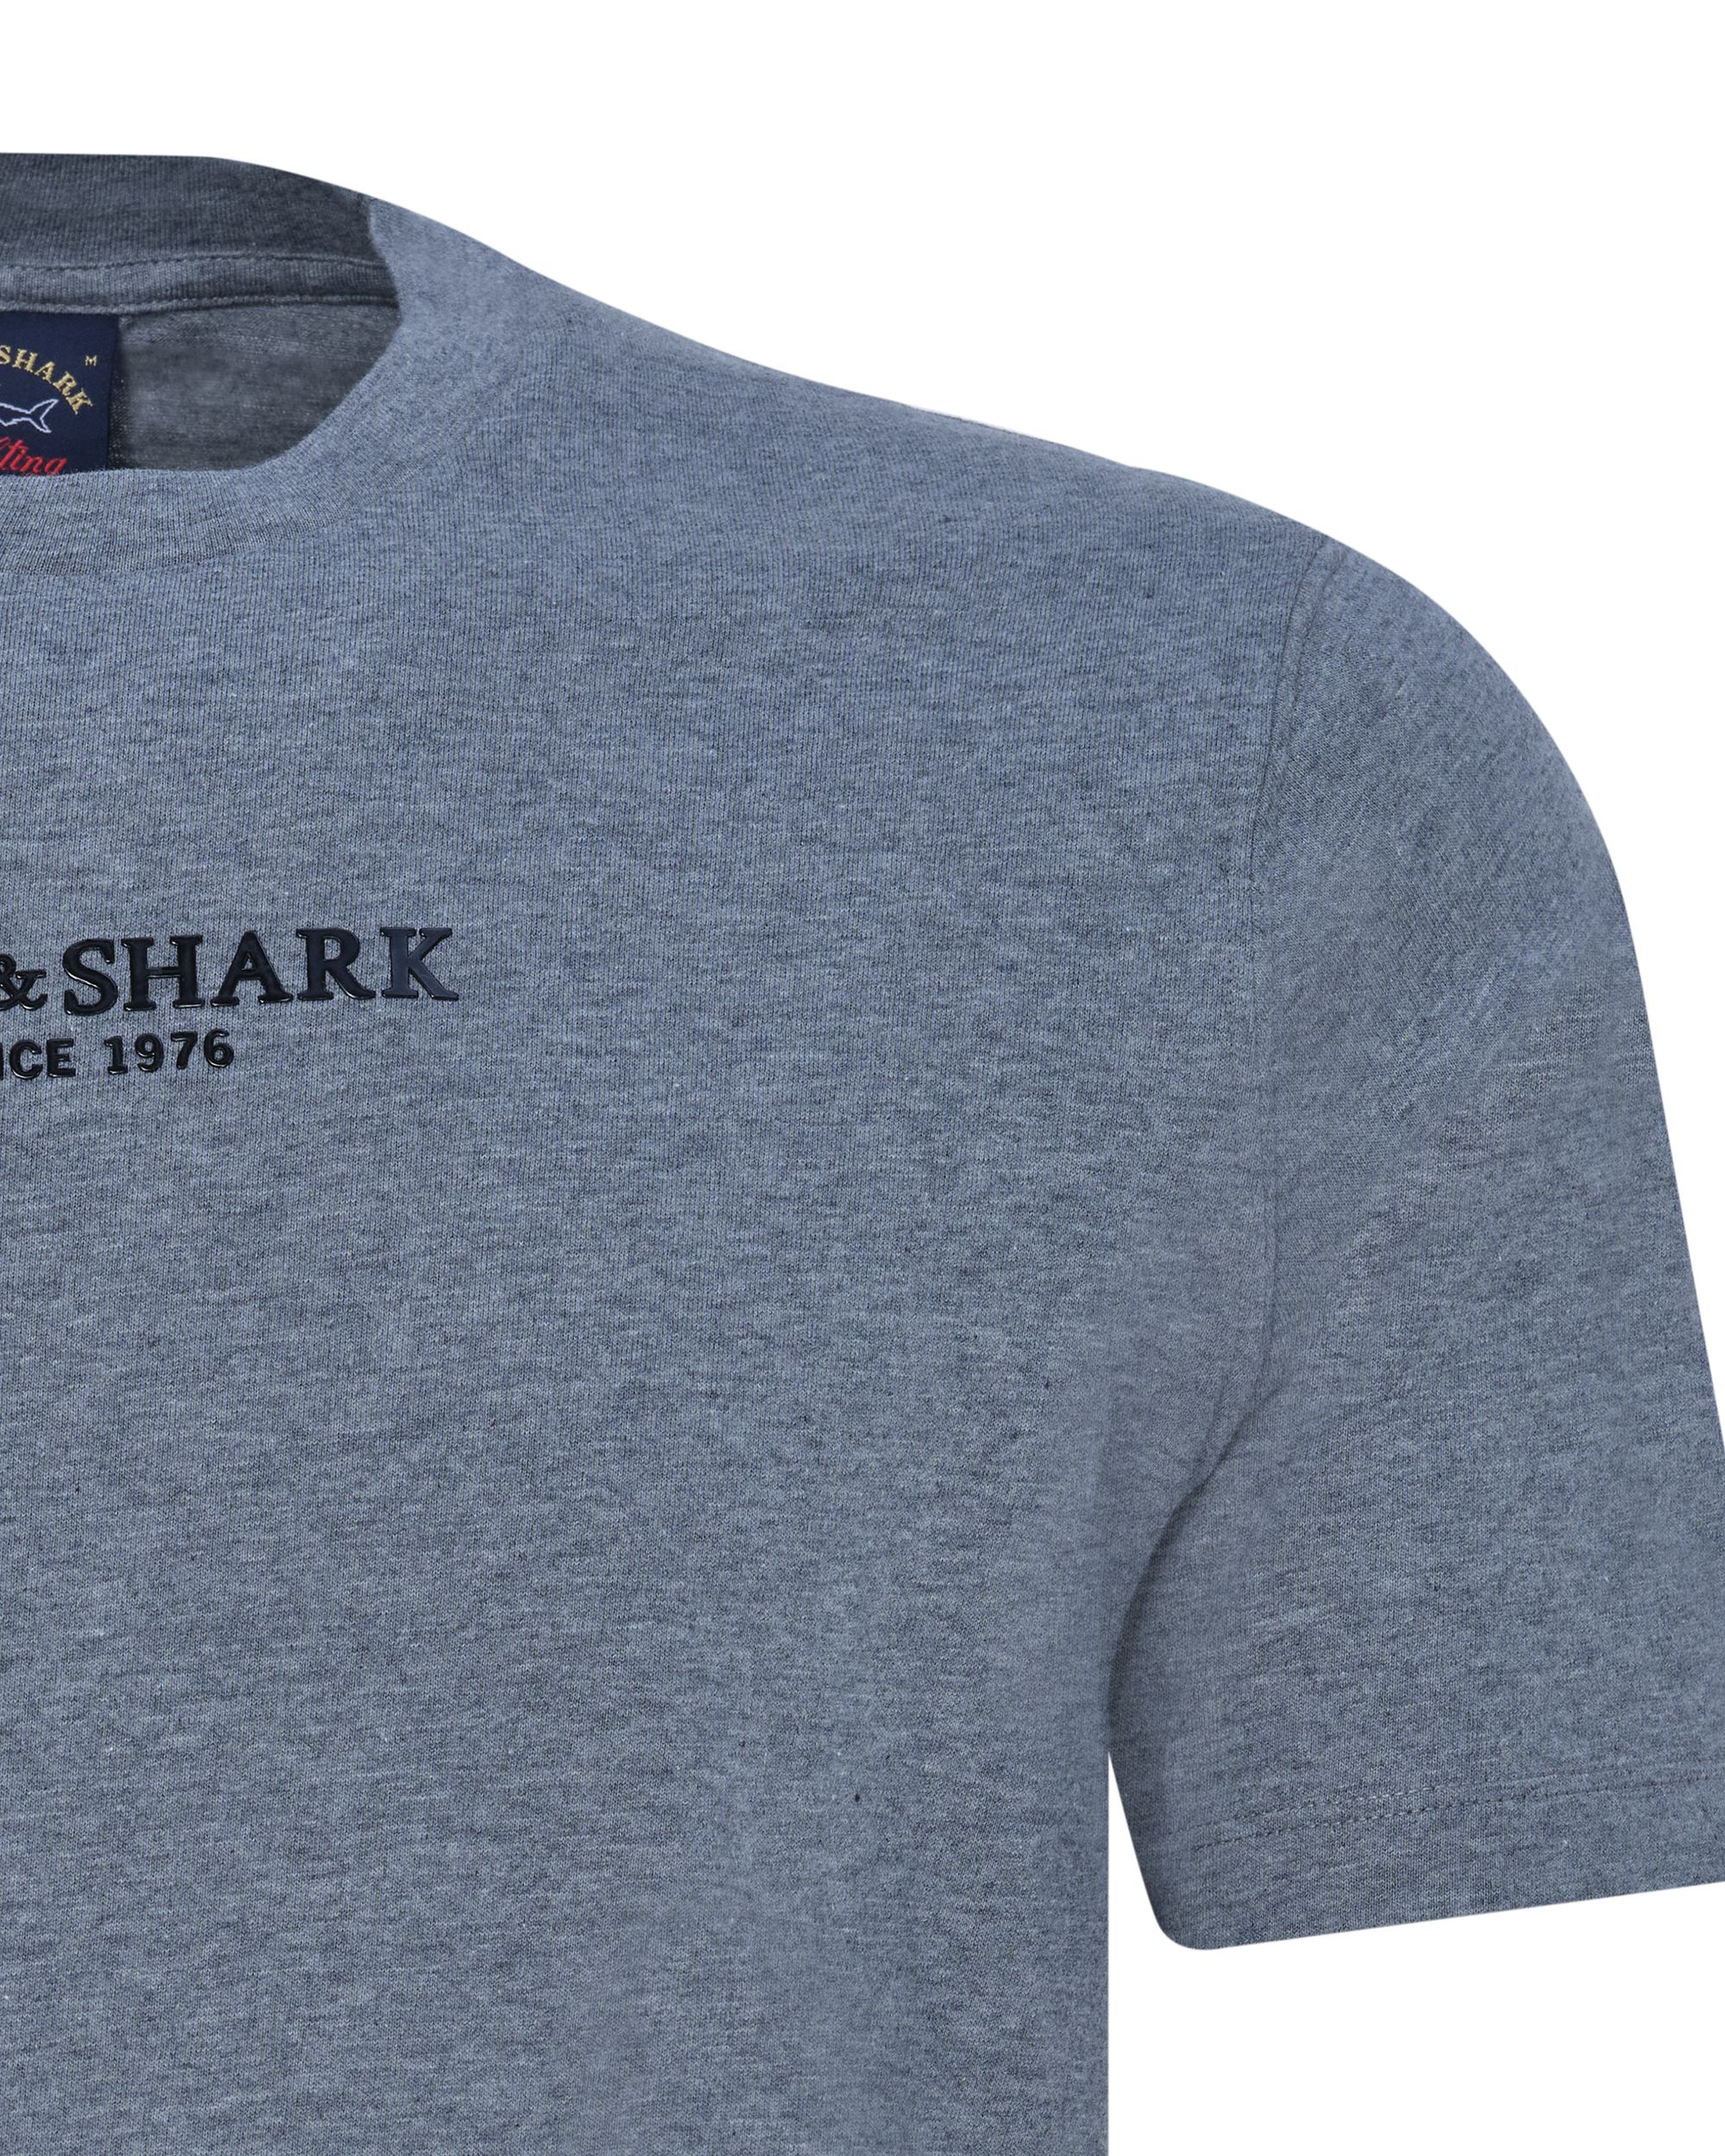 Paul & Shark T-shirt KM Grijs 080383-001-L